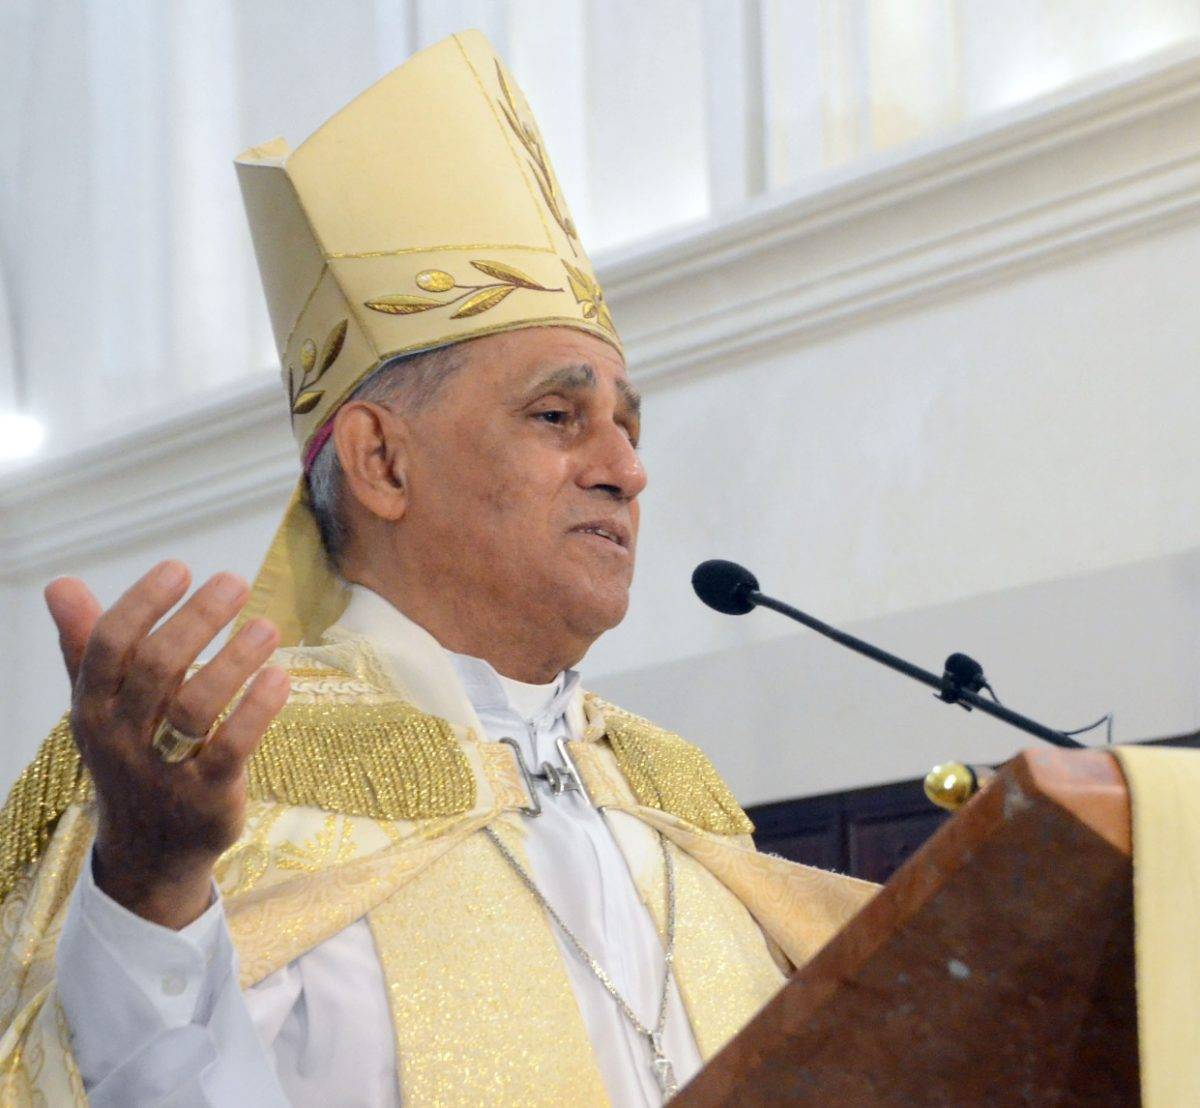 Arzobispo afirma hay que limpiar lacra corrupción